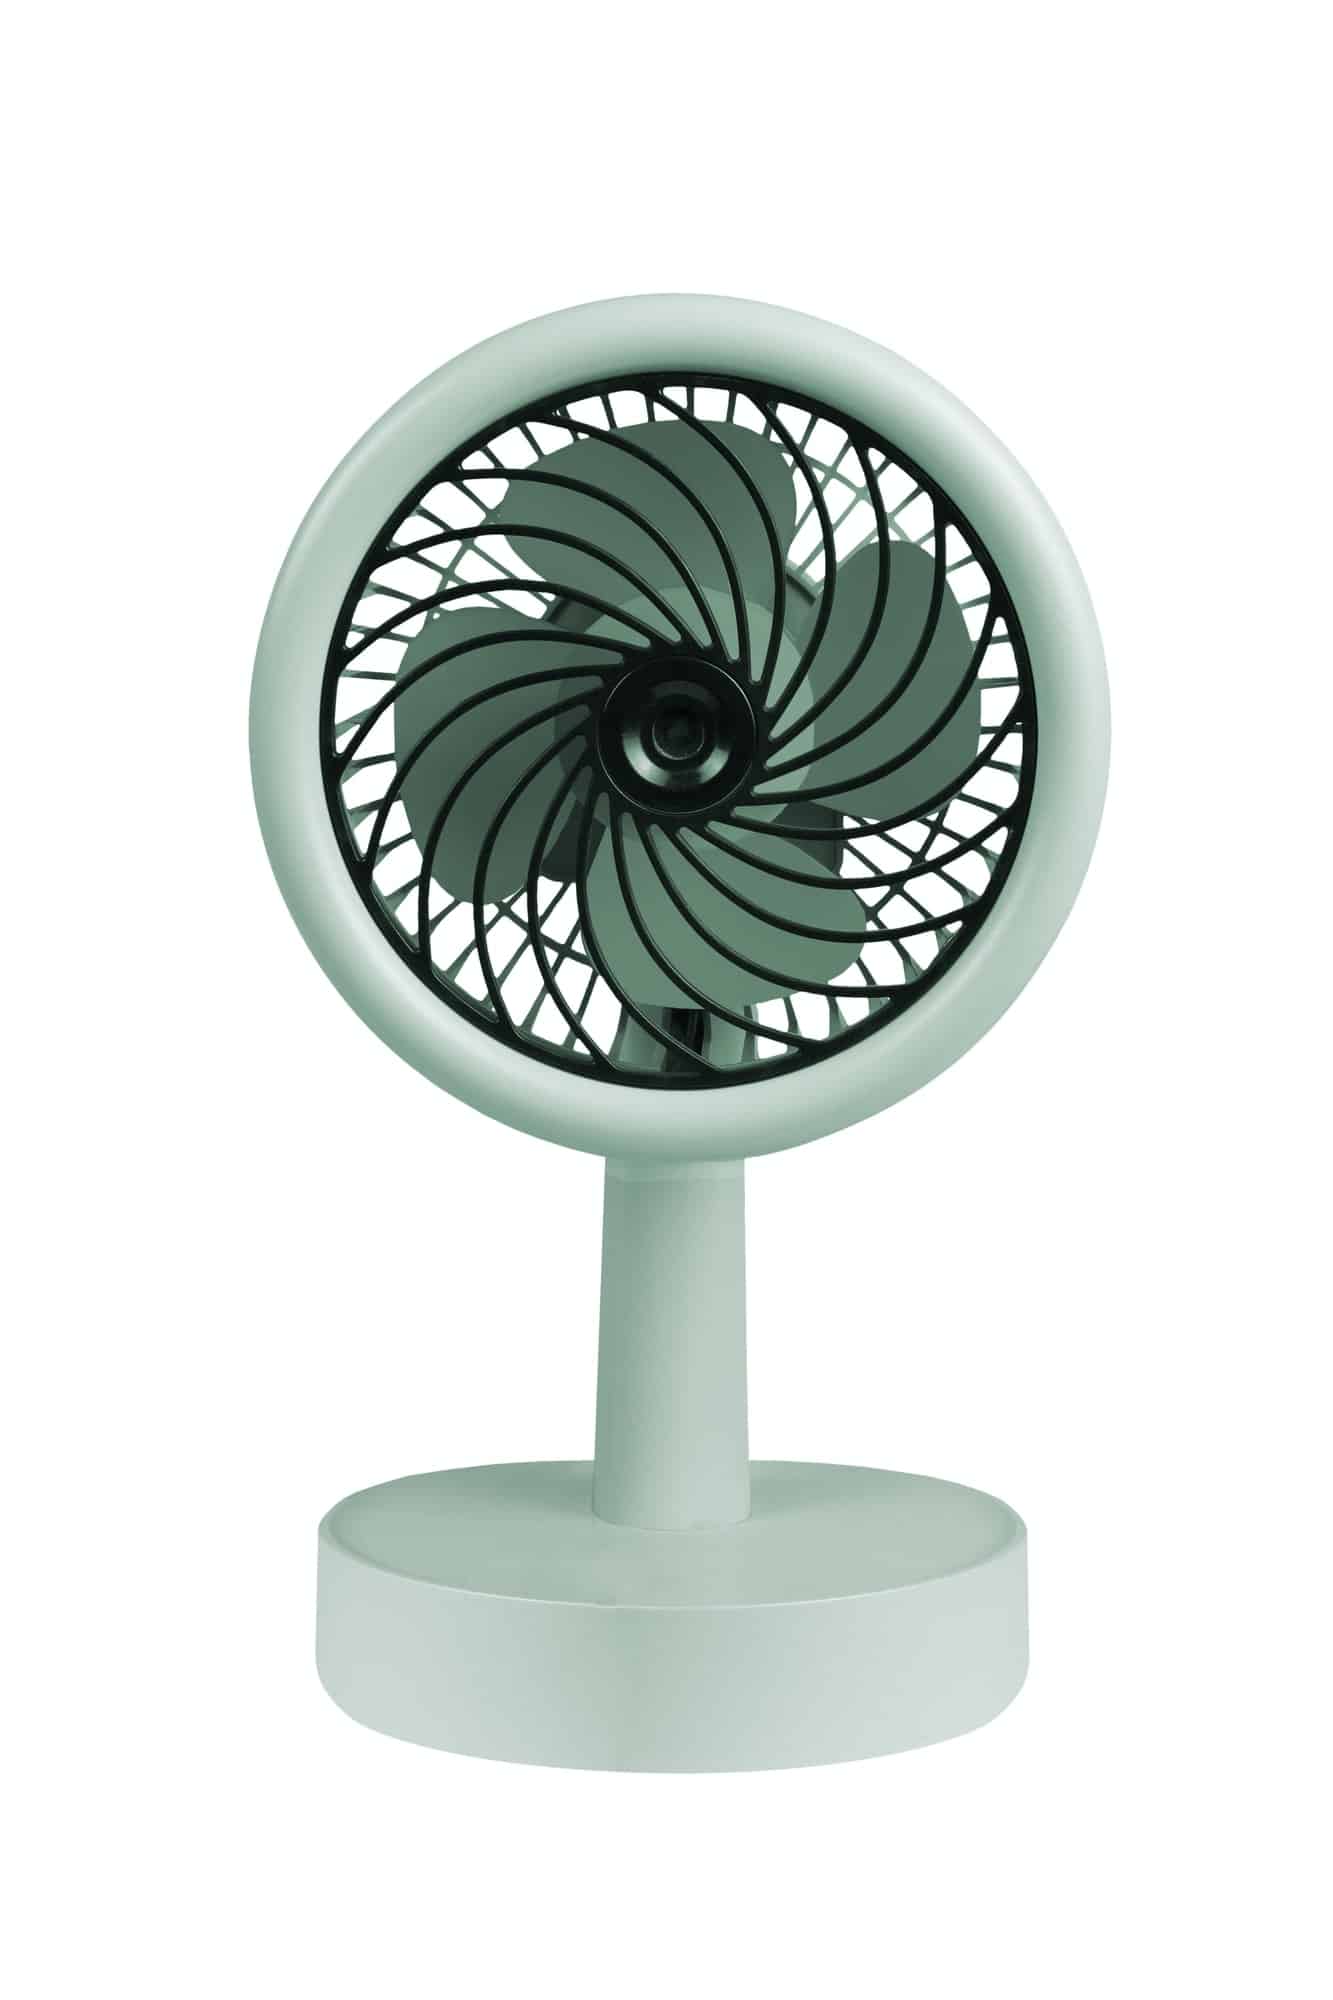 Quels sont les avantages d’un ventilateur connecté ?